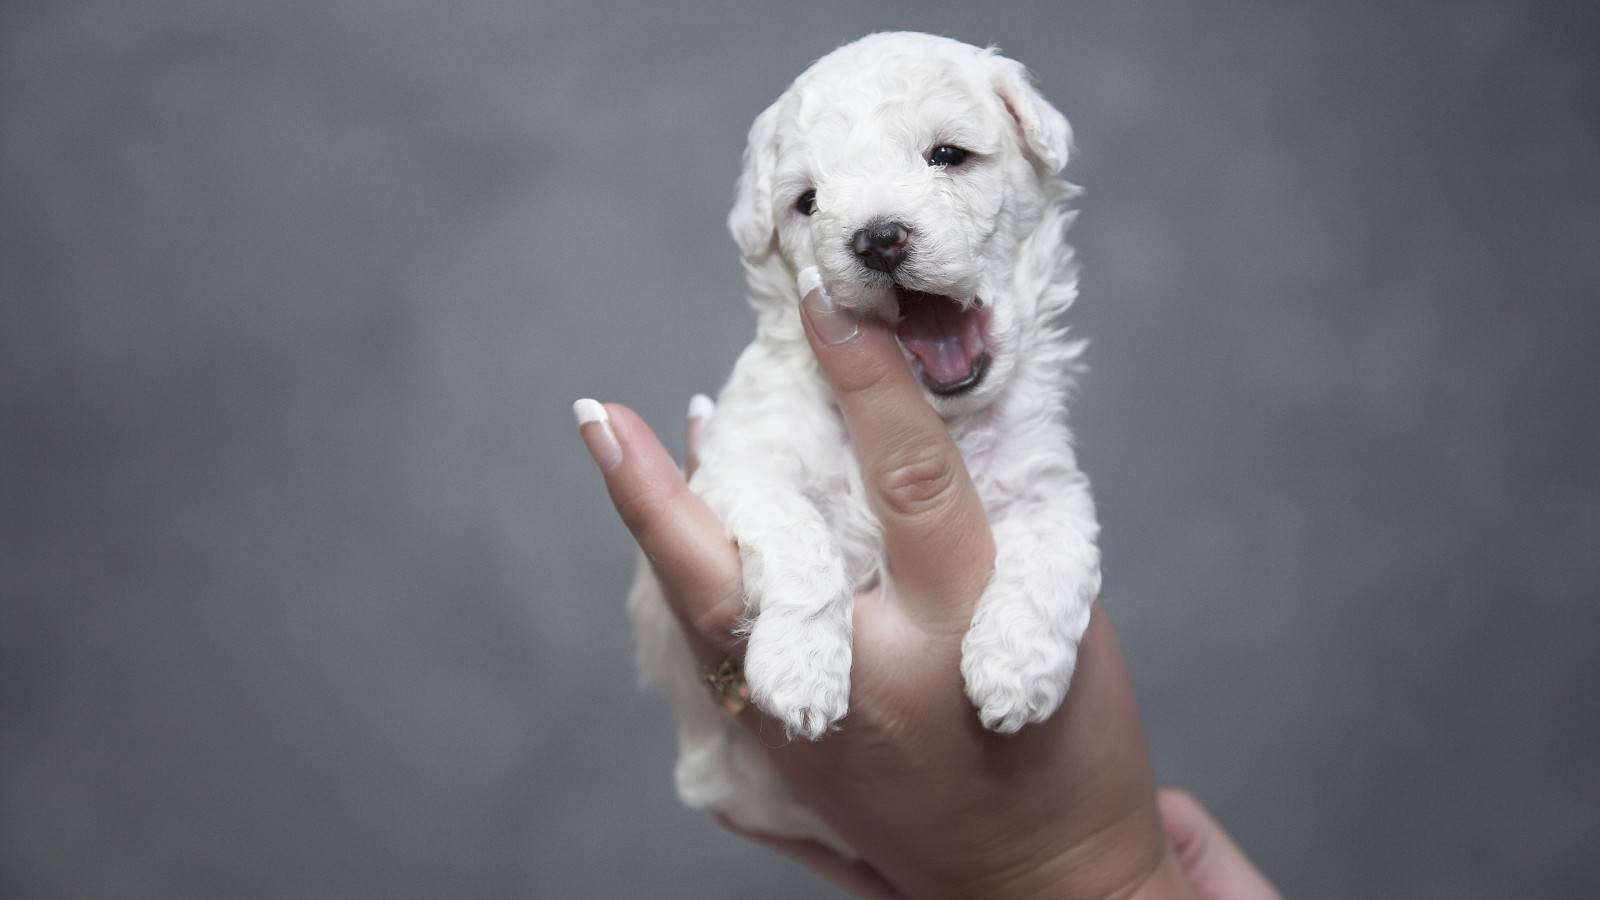 Cutest white puppy wallpaper 1600x900